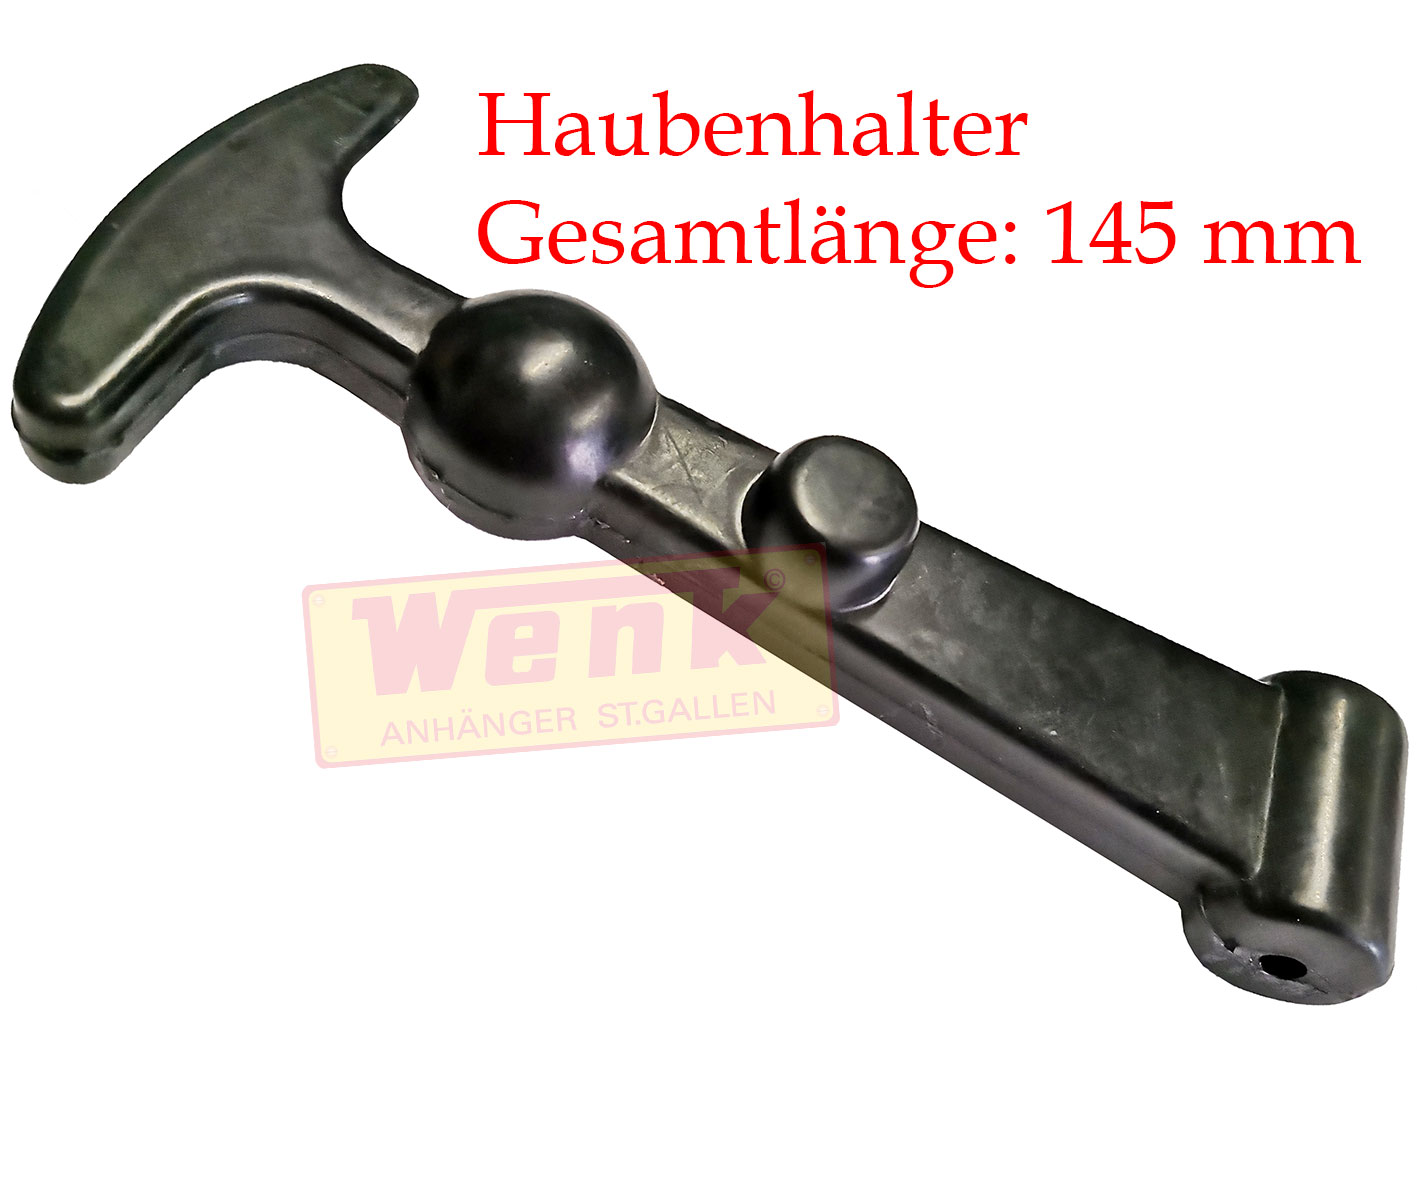 Haubenhalter lose 145mm